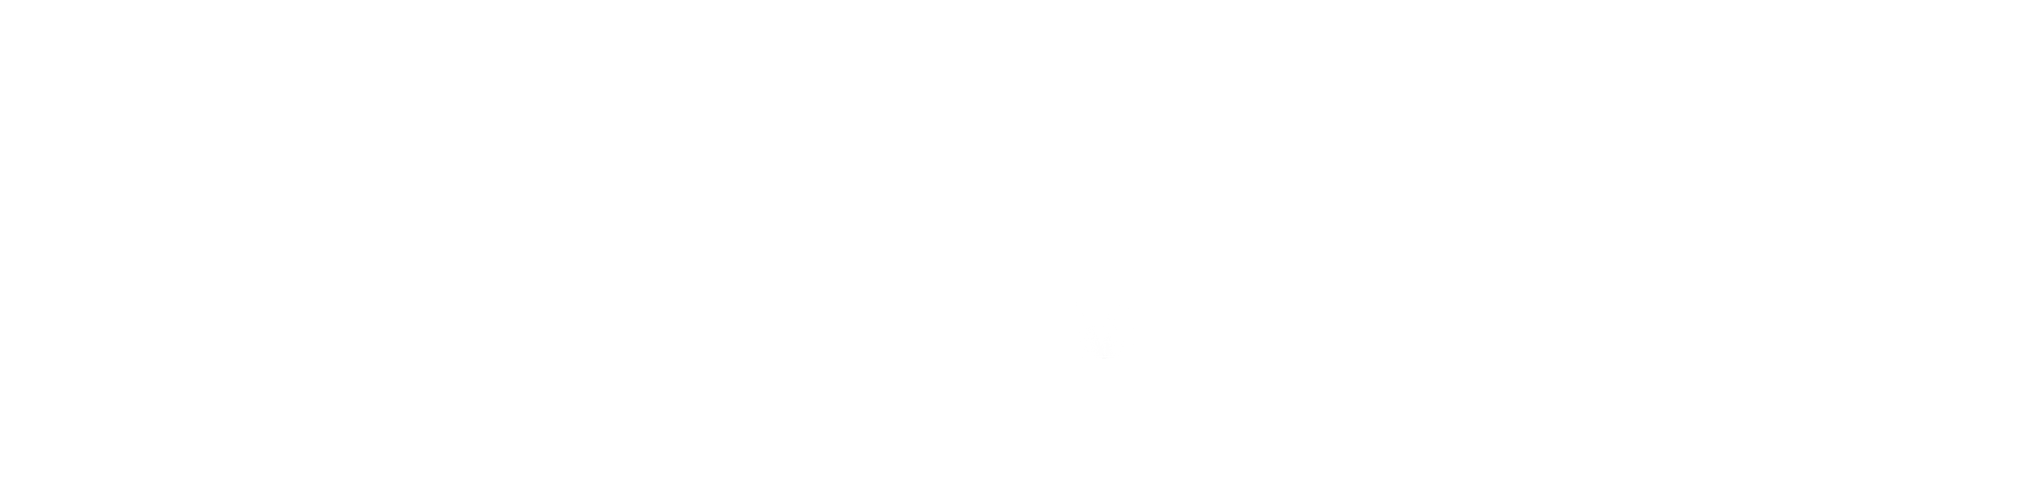 Parco logo